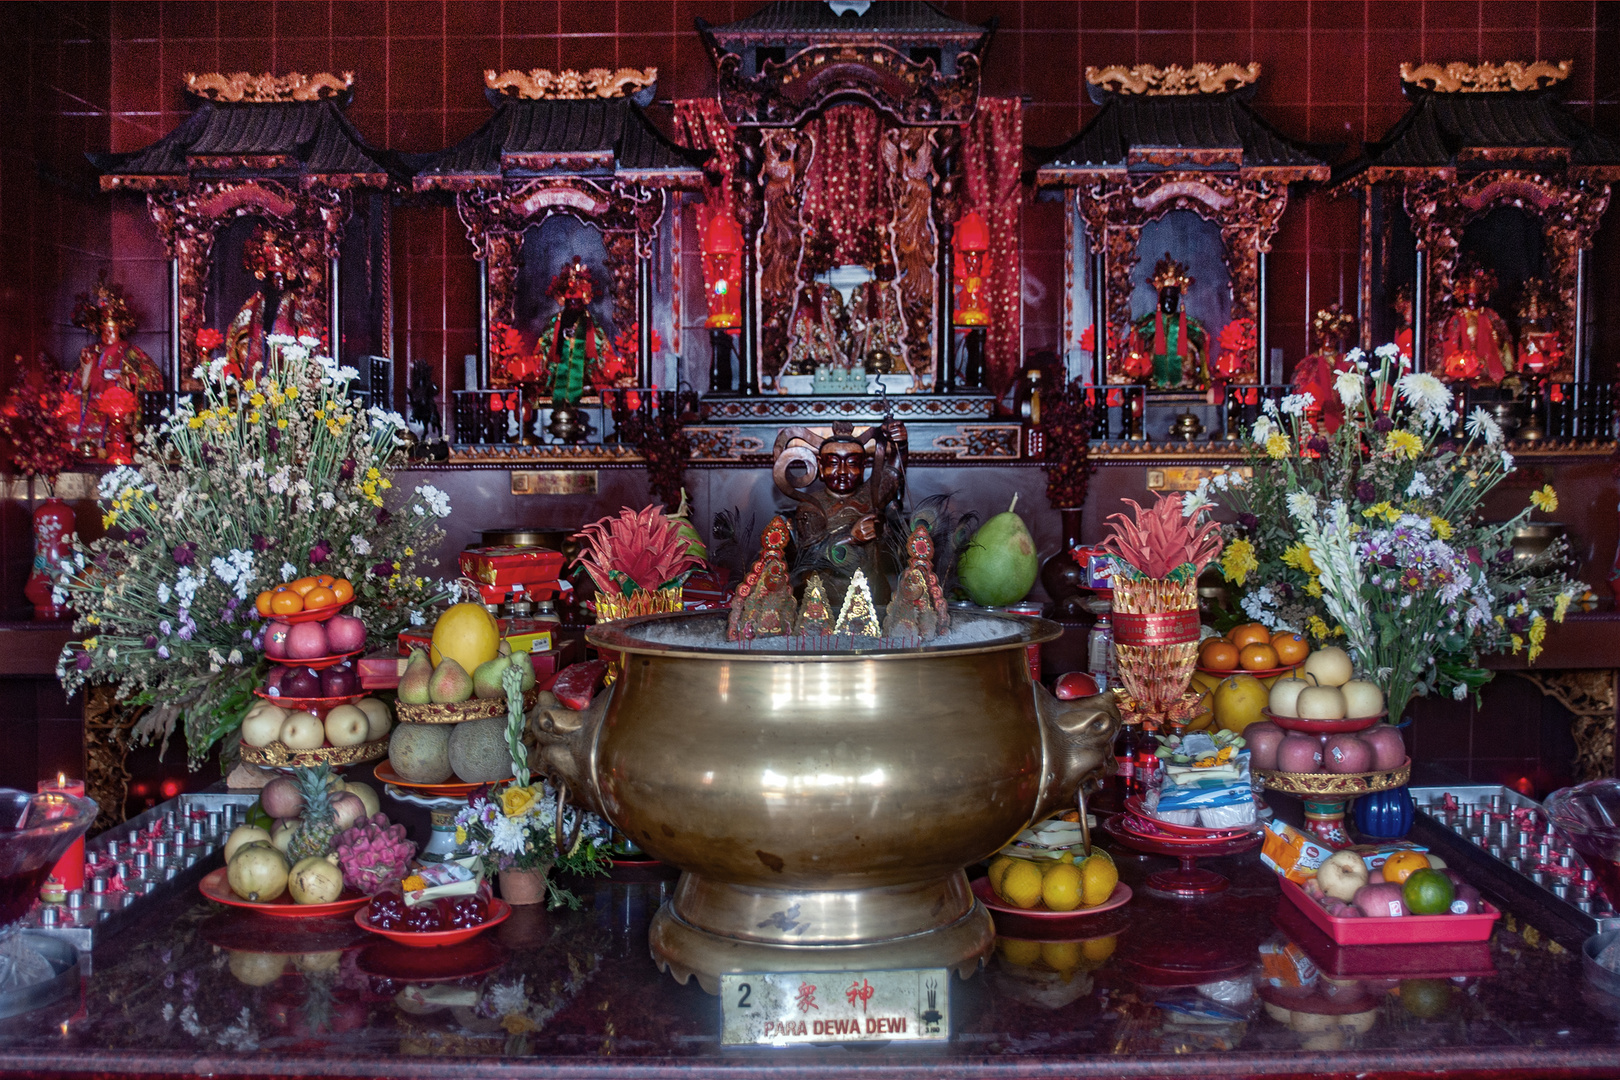 Devotion and worship to deity Dewi